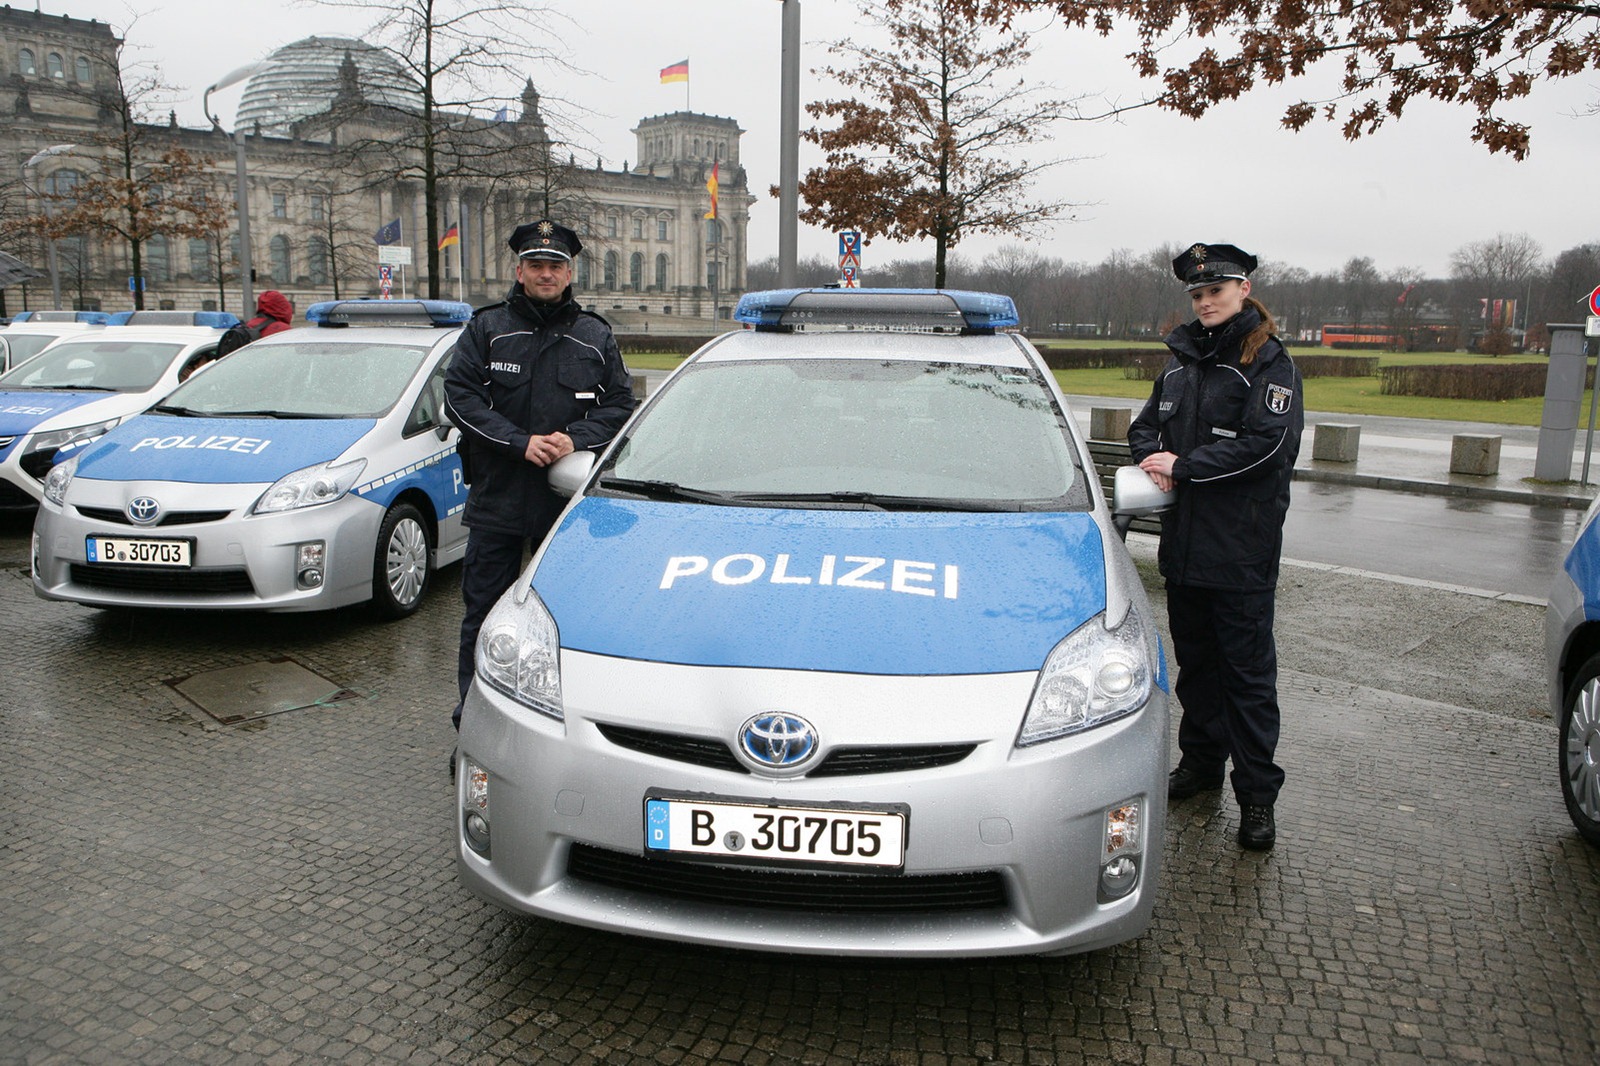 Toyota Prius Berlin police